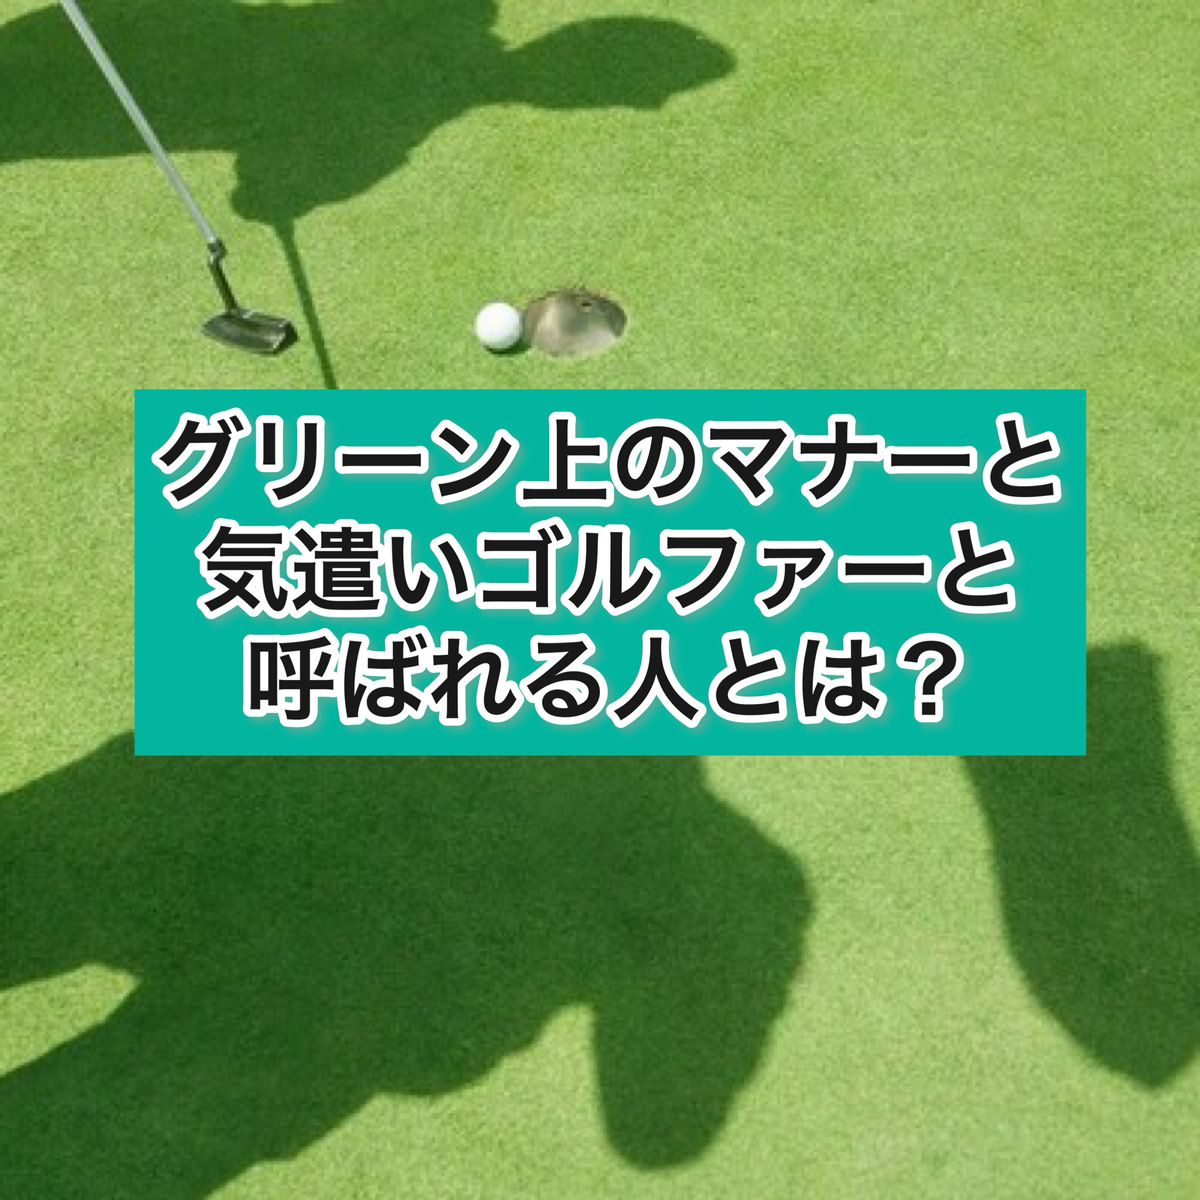 グリーン上のマナーと気遣いゴルファーと呼ばれる人とは？